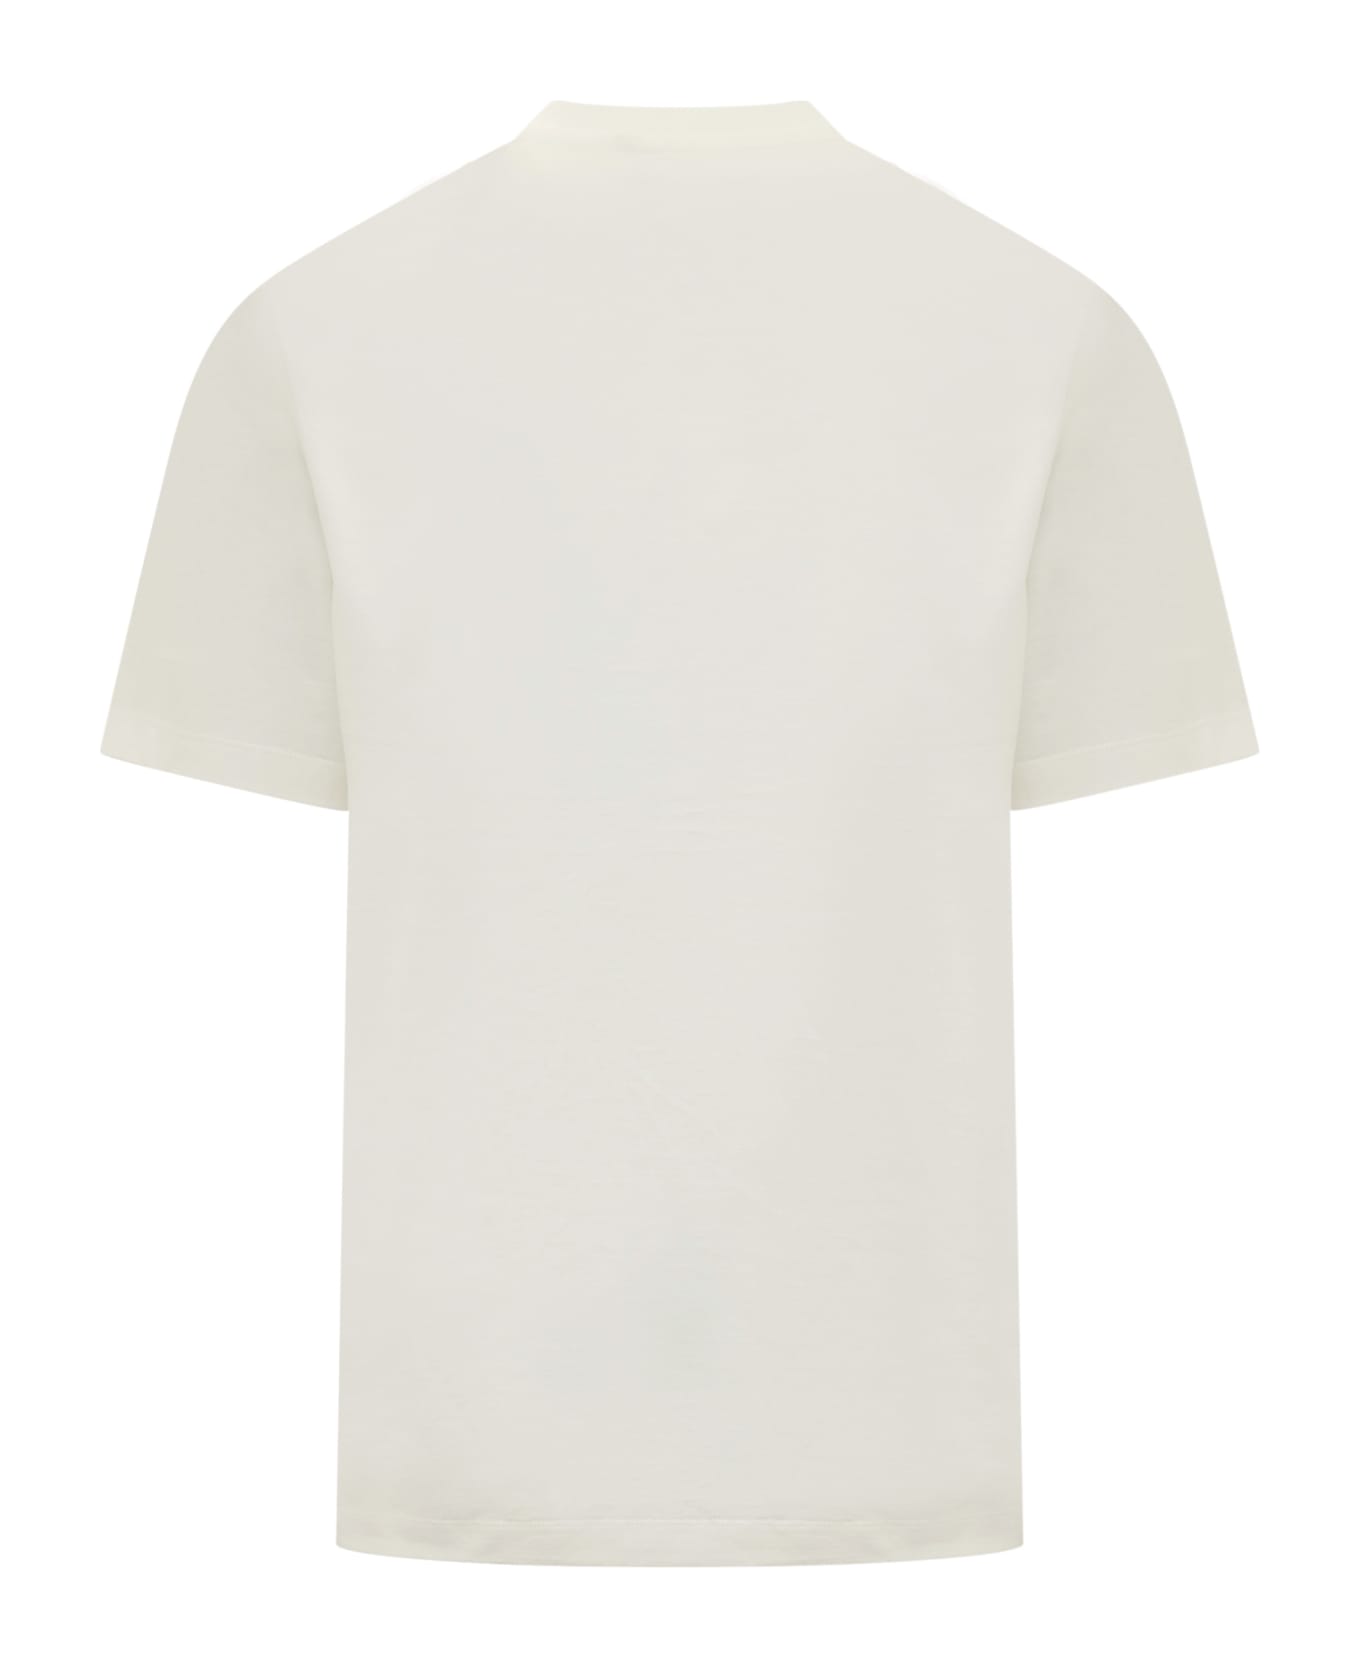 Y-3 Gfx T-shirt - OWHITE Tシャツ